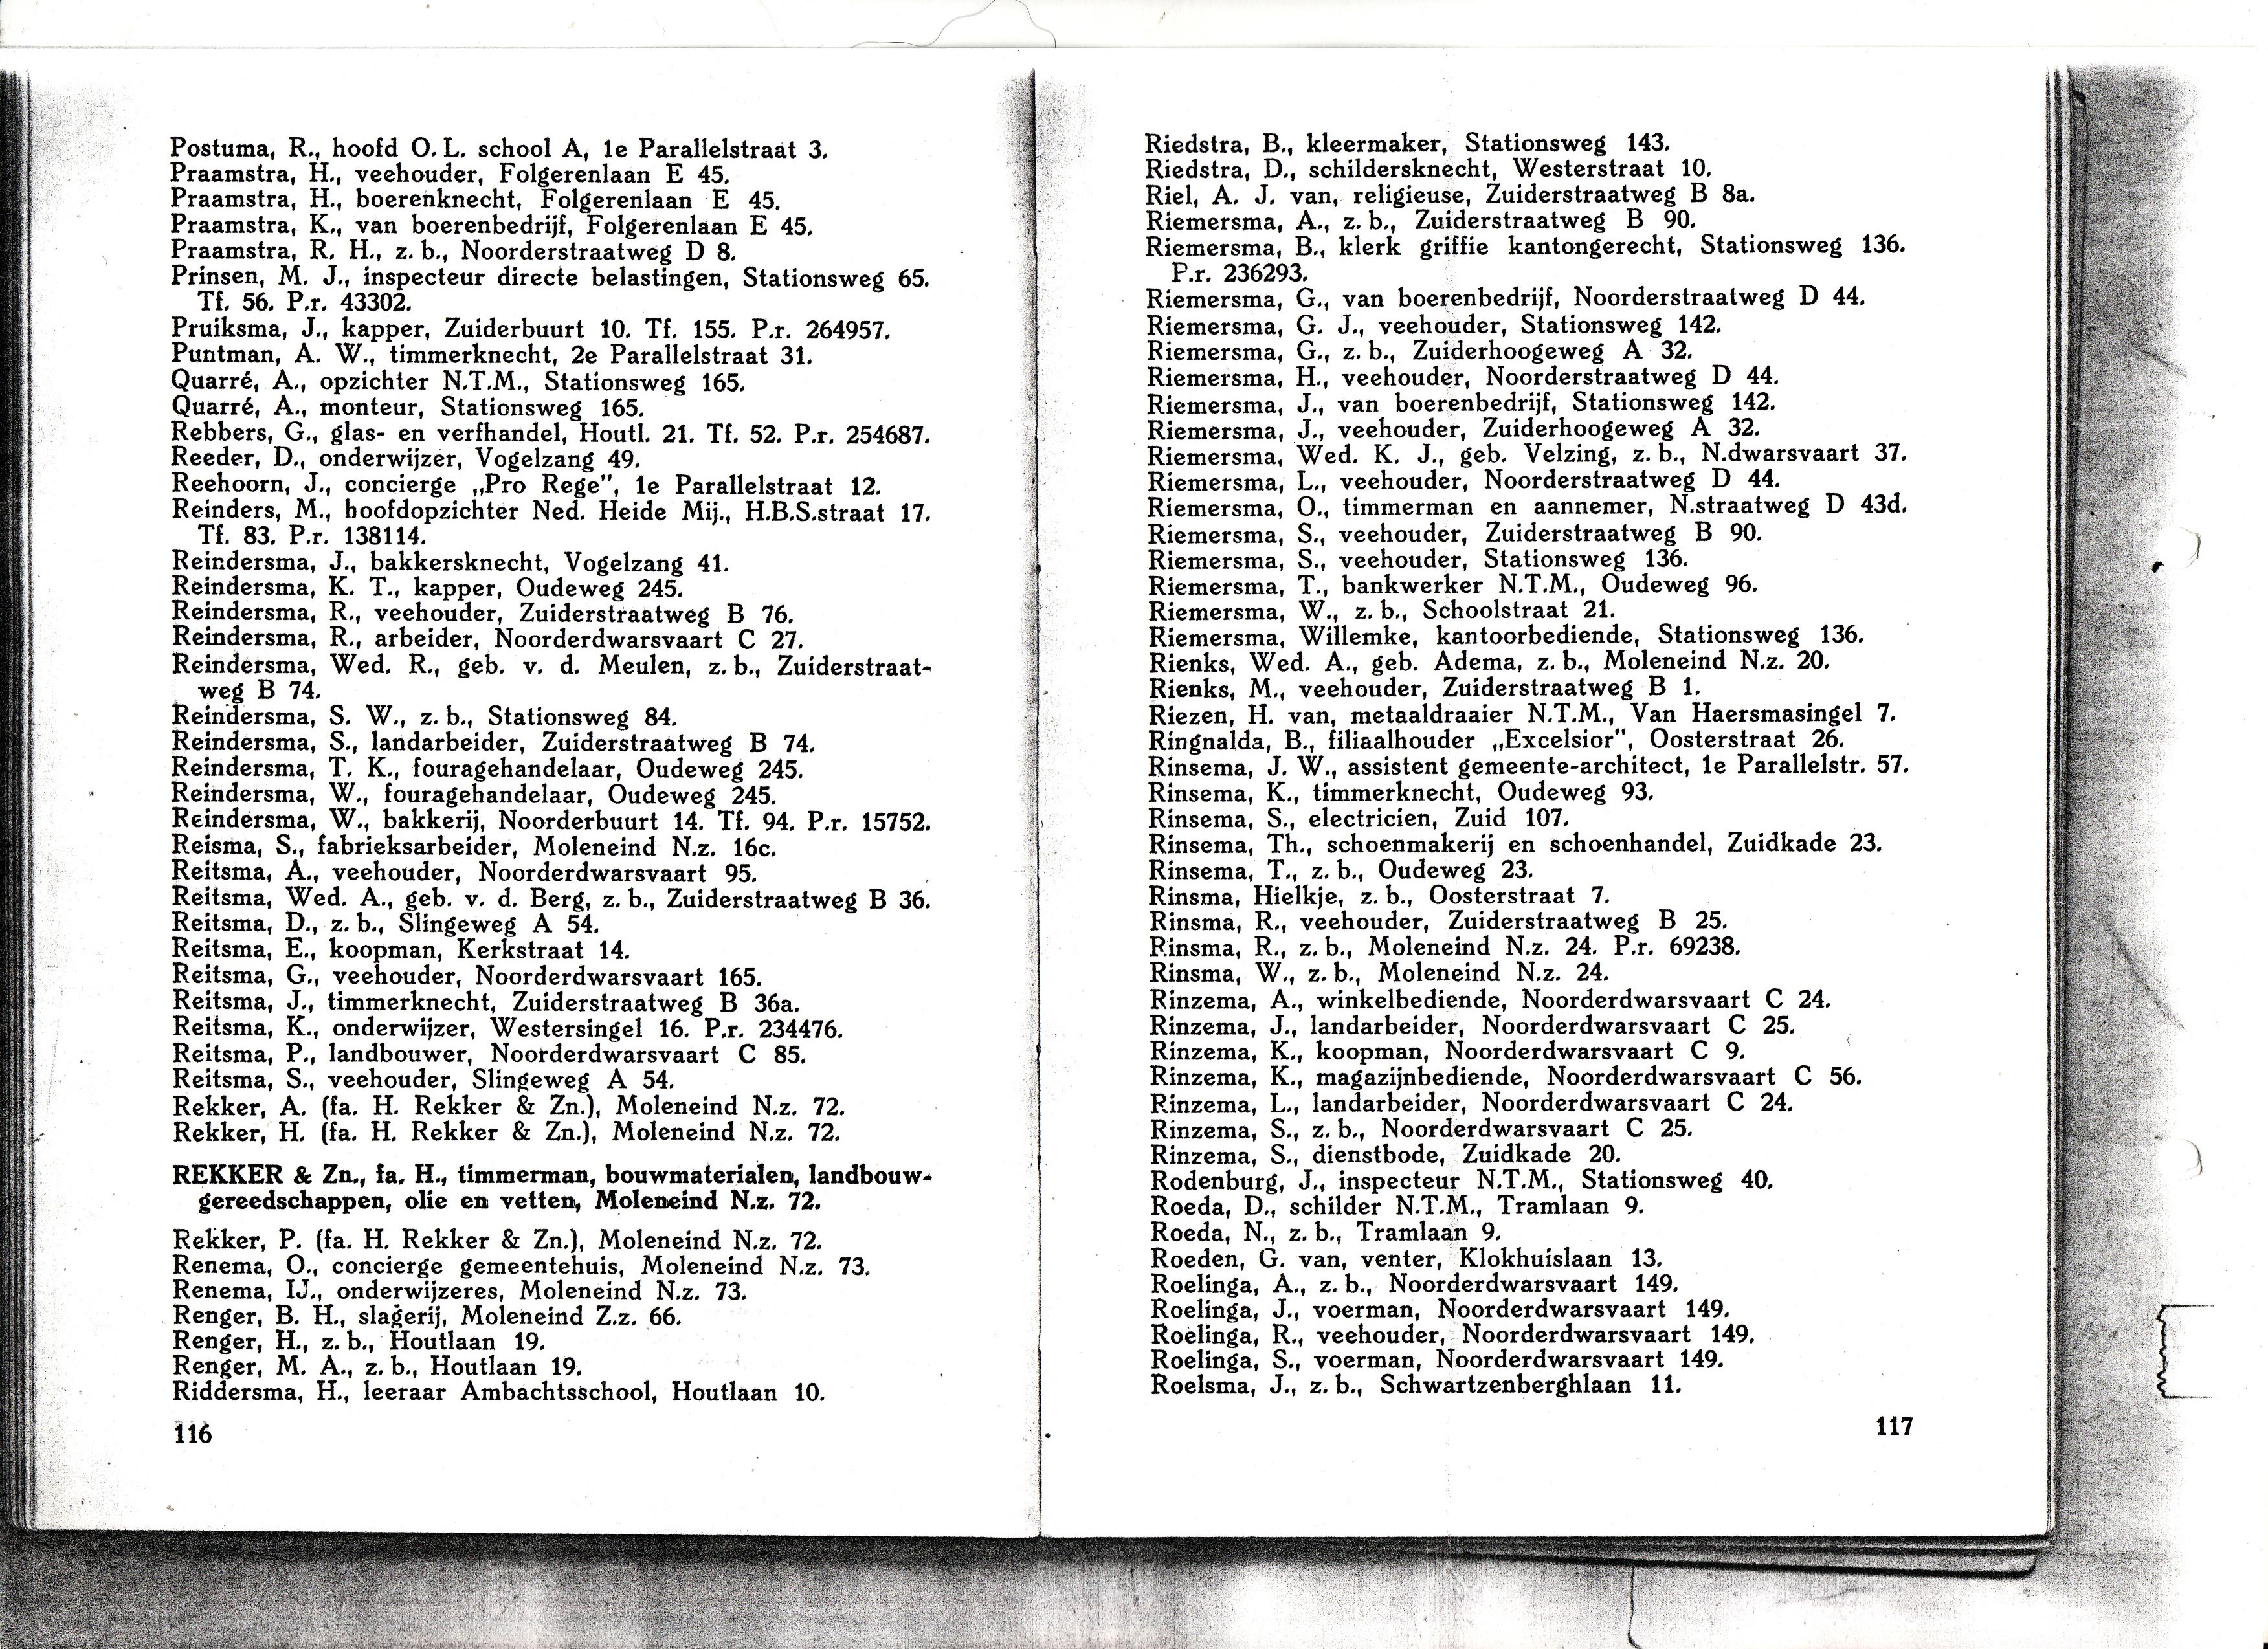 Adresgegevens uit het Adresboek voor Friesland uit 1936